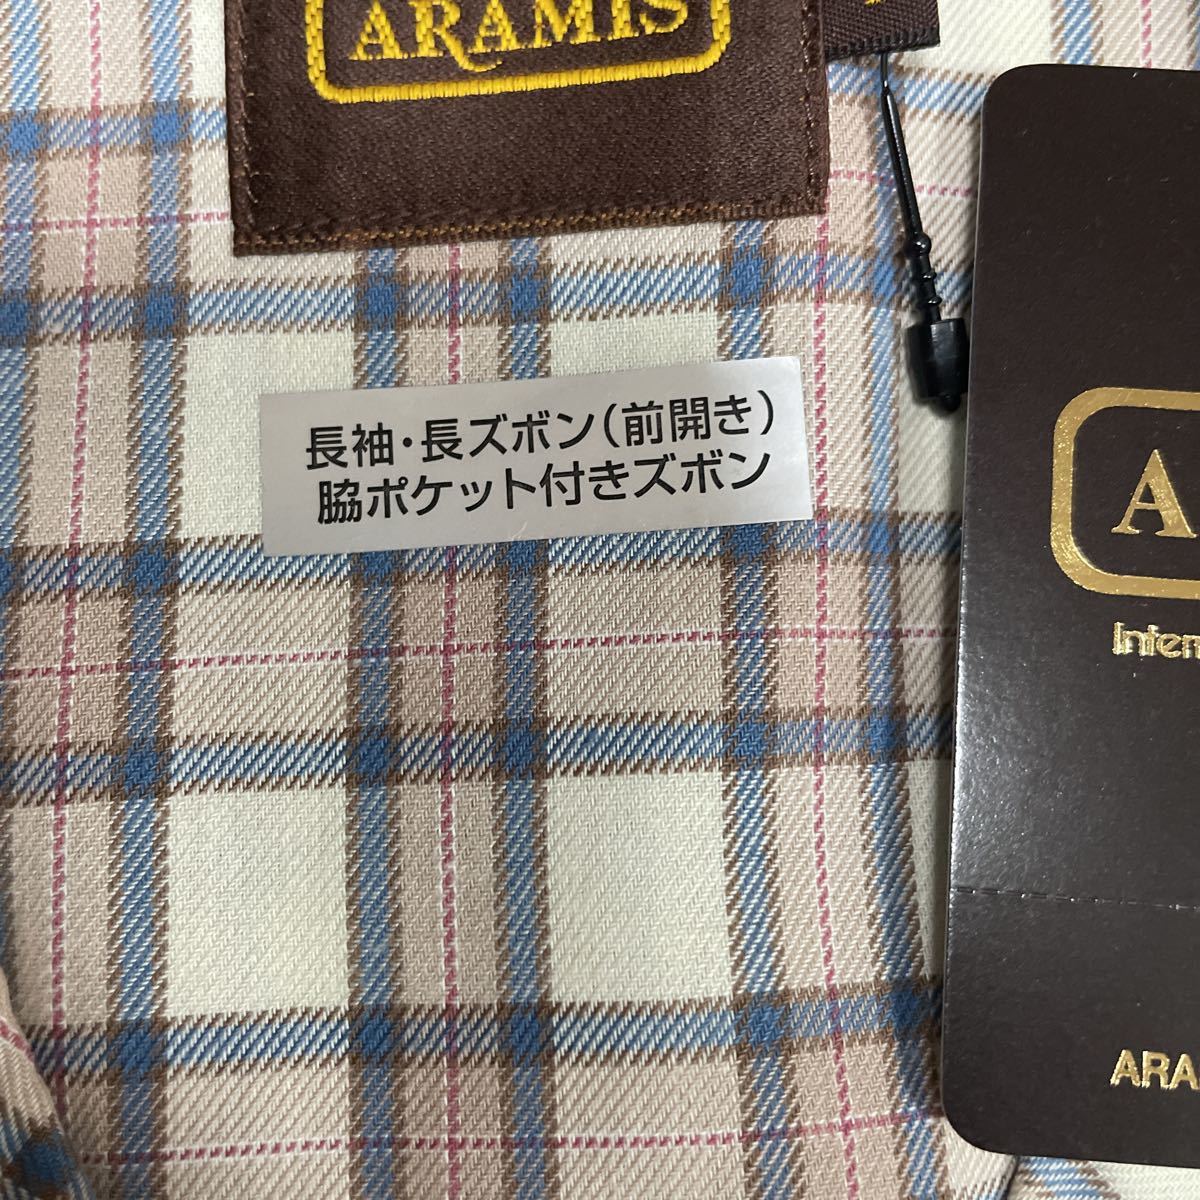  Aramis pyjamas L check men's pyjamas cotton 100% for man 